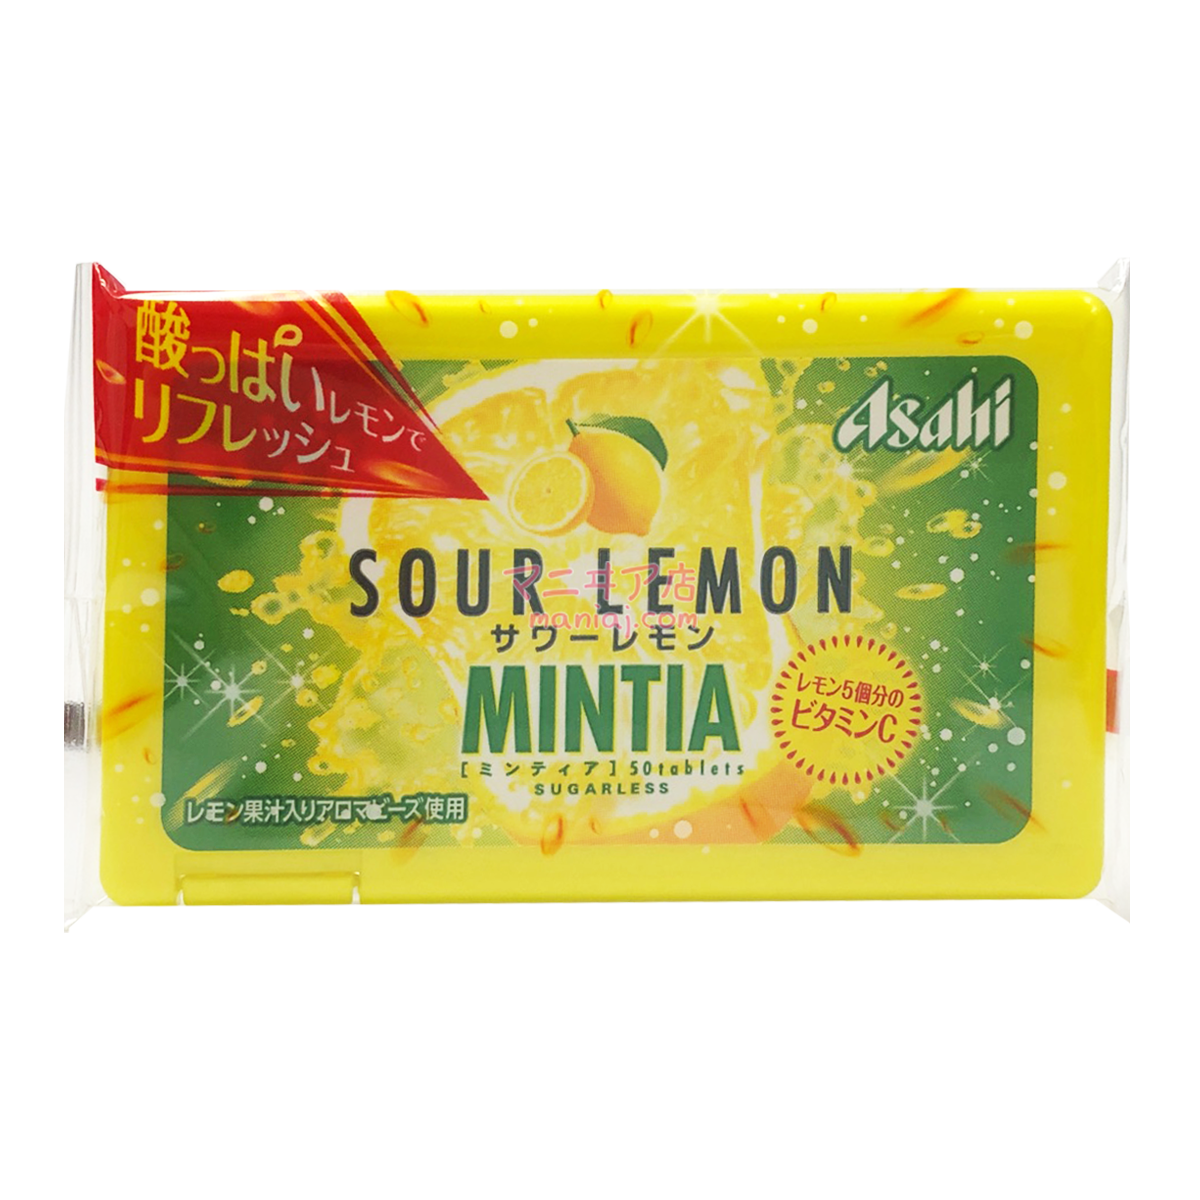 MINTIA Sour Lemon Mints